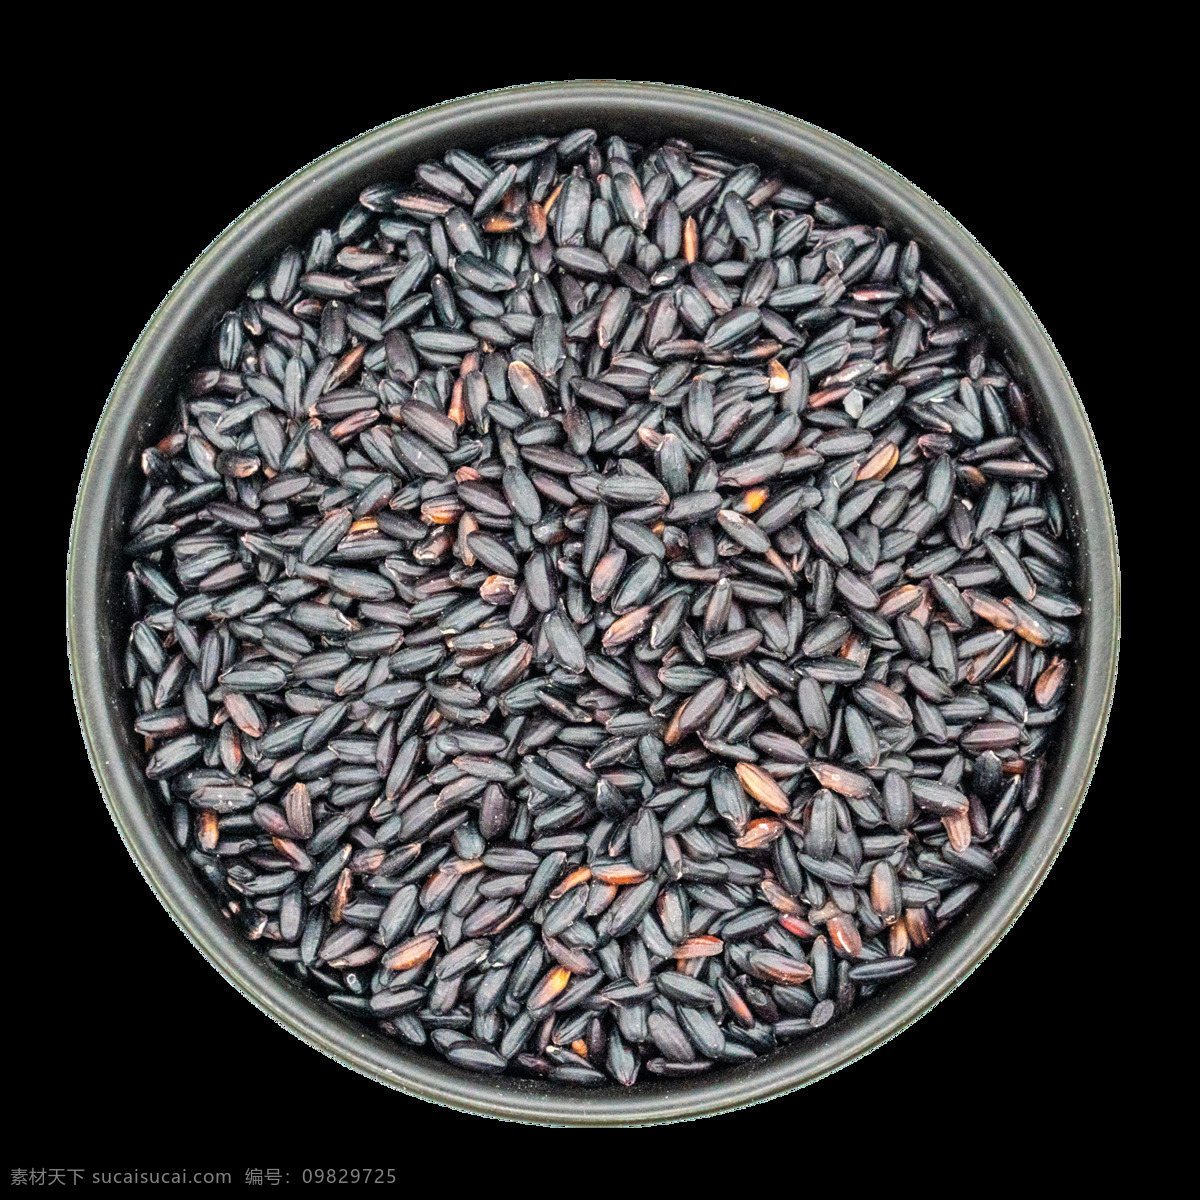 黑米图片 黑米 稻田 田园风光 乡村 蓝天白云绿豆 杂粮 水稻 米饭 玉米糁 五谷 农产品 大米 粗粮 生活中的照片